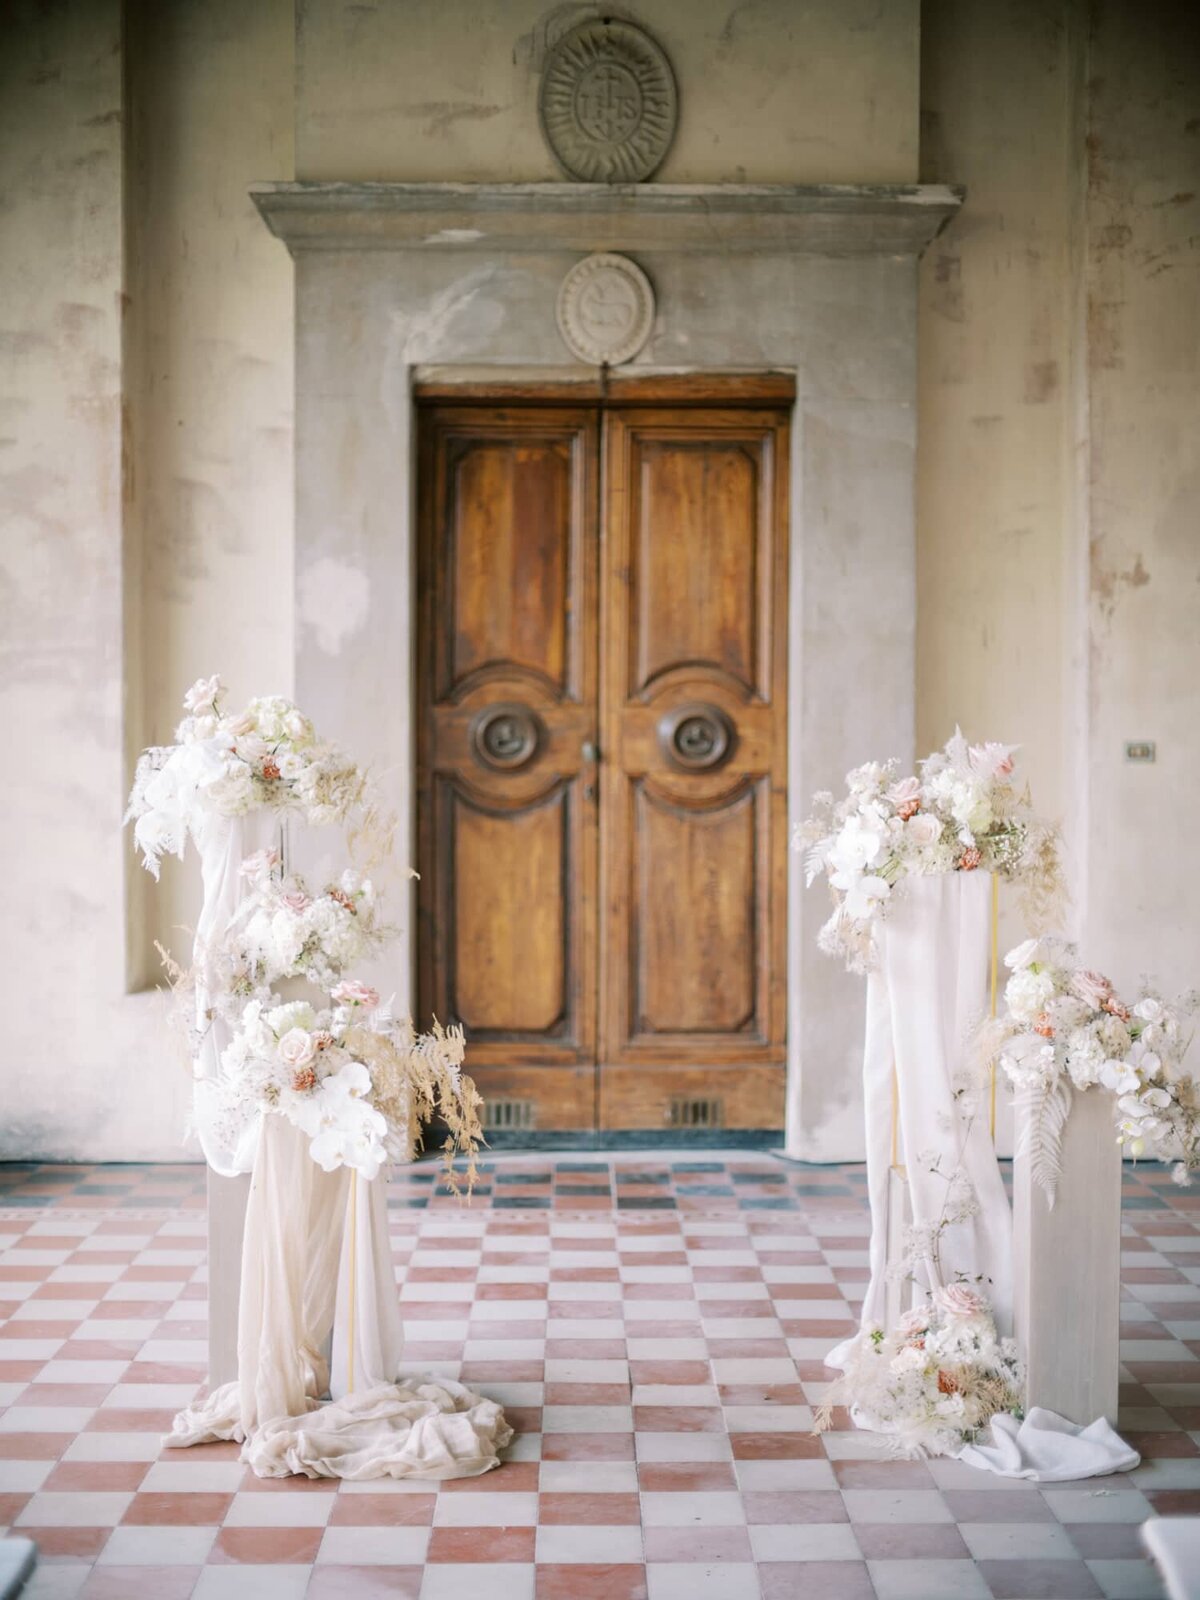 AndreasKGeorgiou-Tuscany-wedding-Italy-26